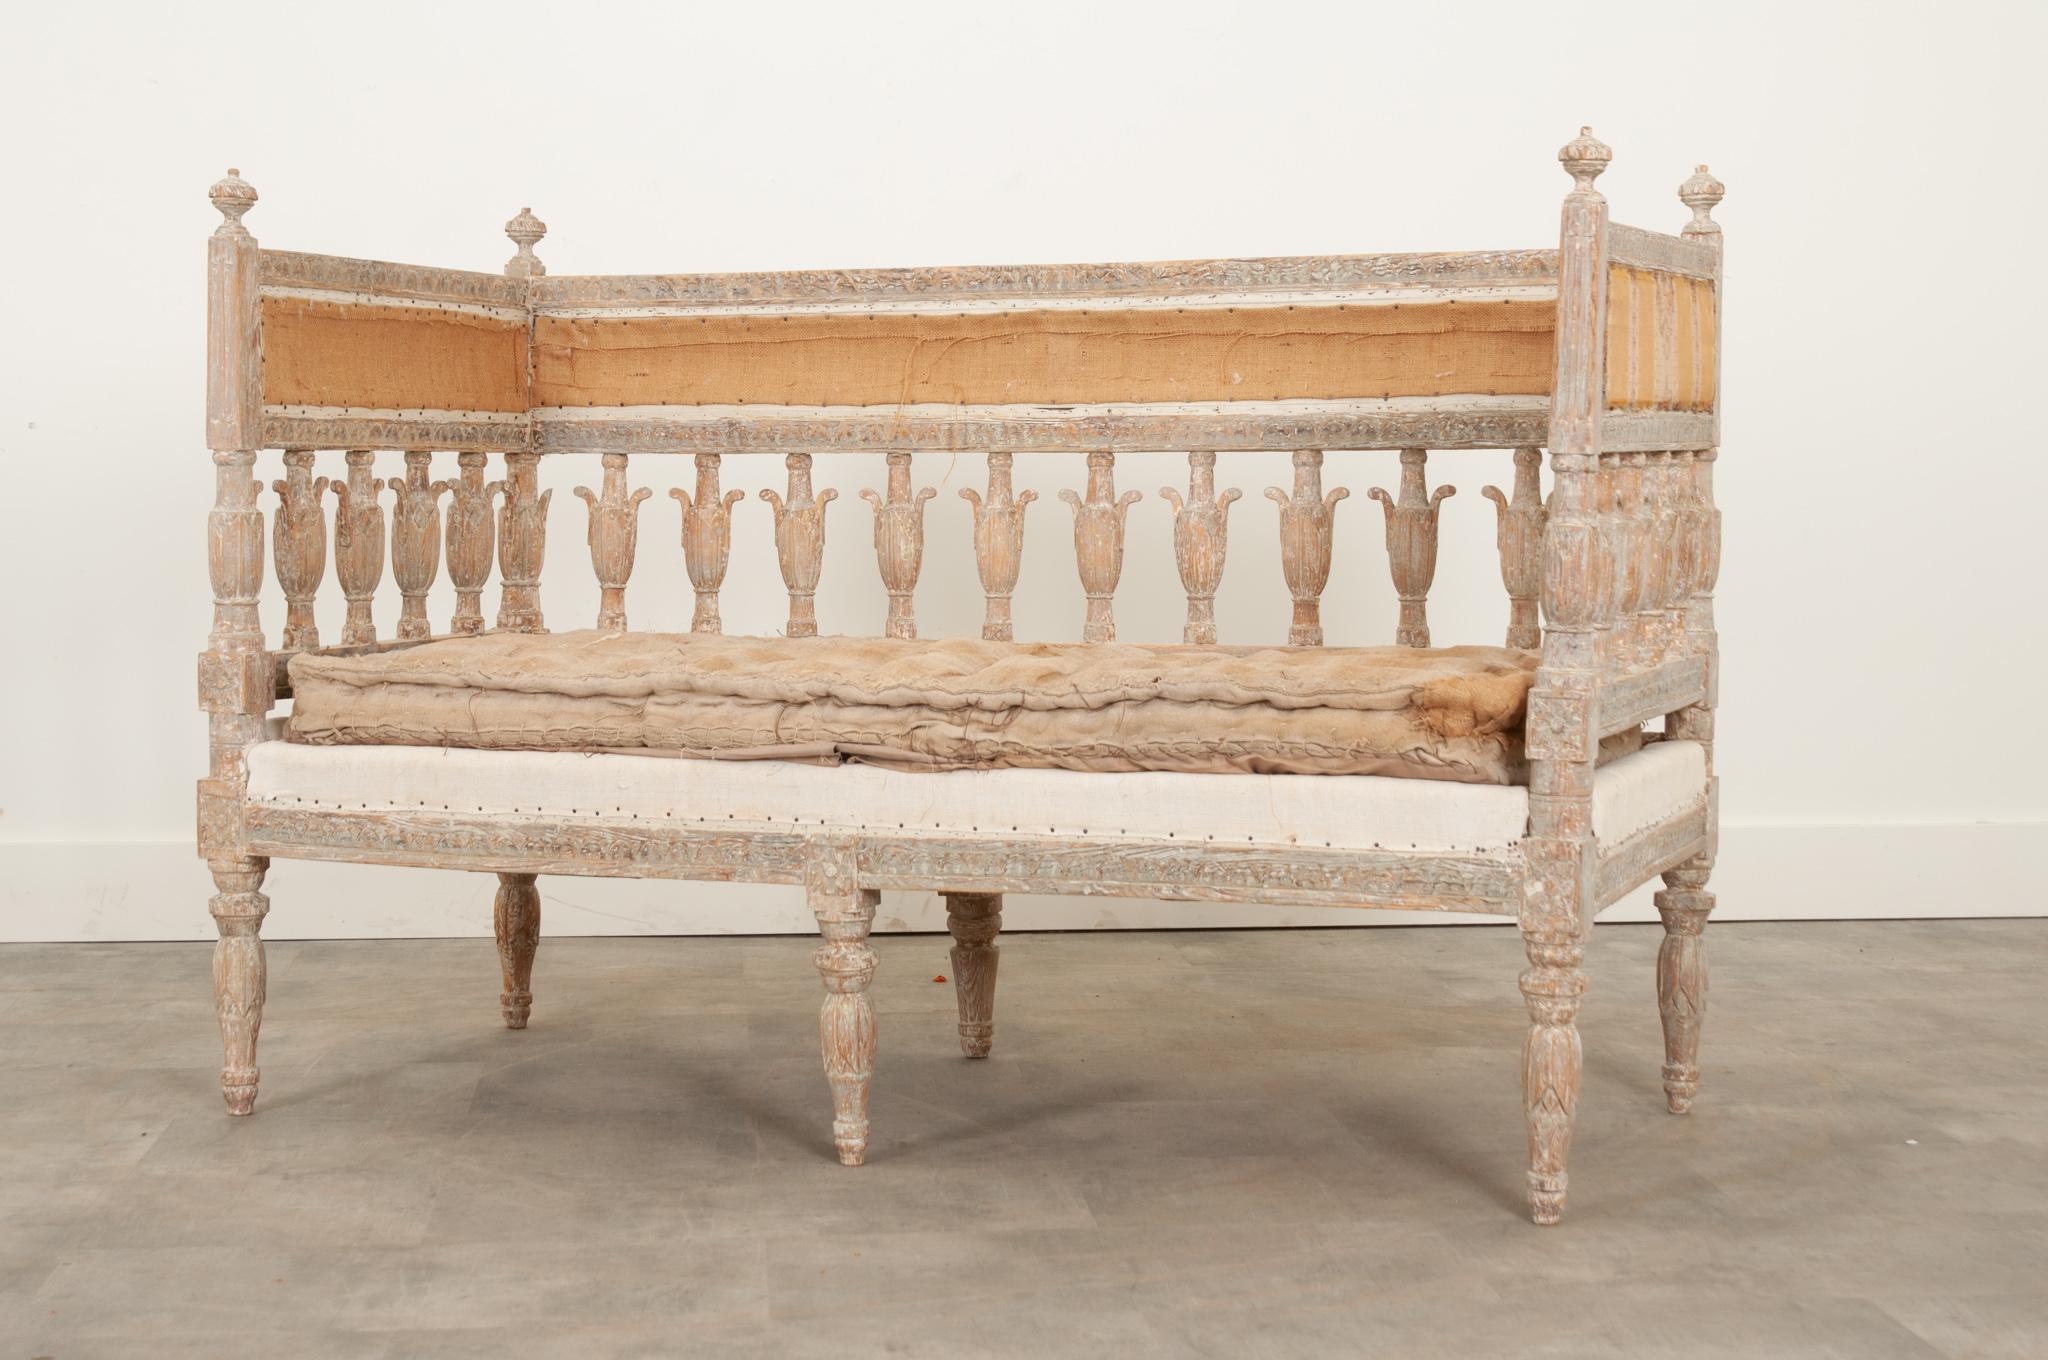 Ce canapé peint suédois du 18e siècle est un véritable bijou. Les détails sculptés à la main sont magnifiquement mis en valeur par la finition originale peinte en gris pâle. Une haute galerie sur trois côtés - parfaite pour y déposer des oreillers -